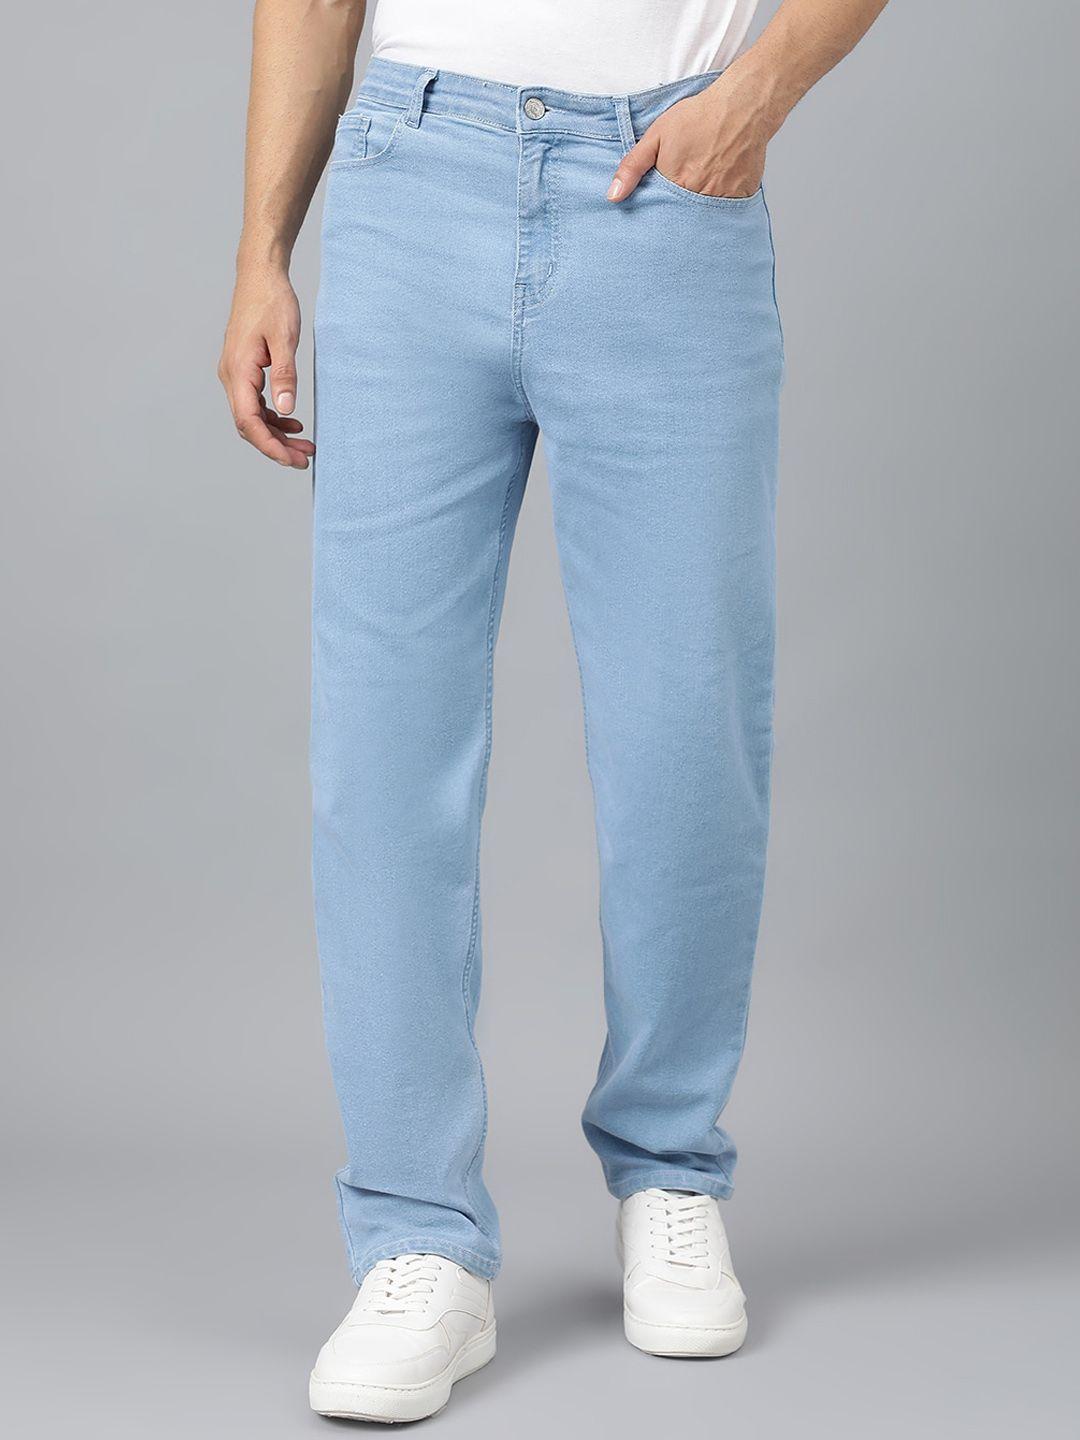 Kotty Men Blue Jean Fit Low-Rise Stretchable Jeans